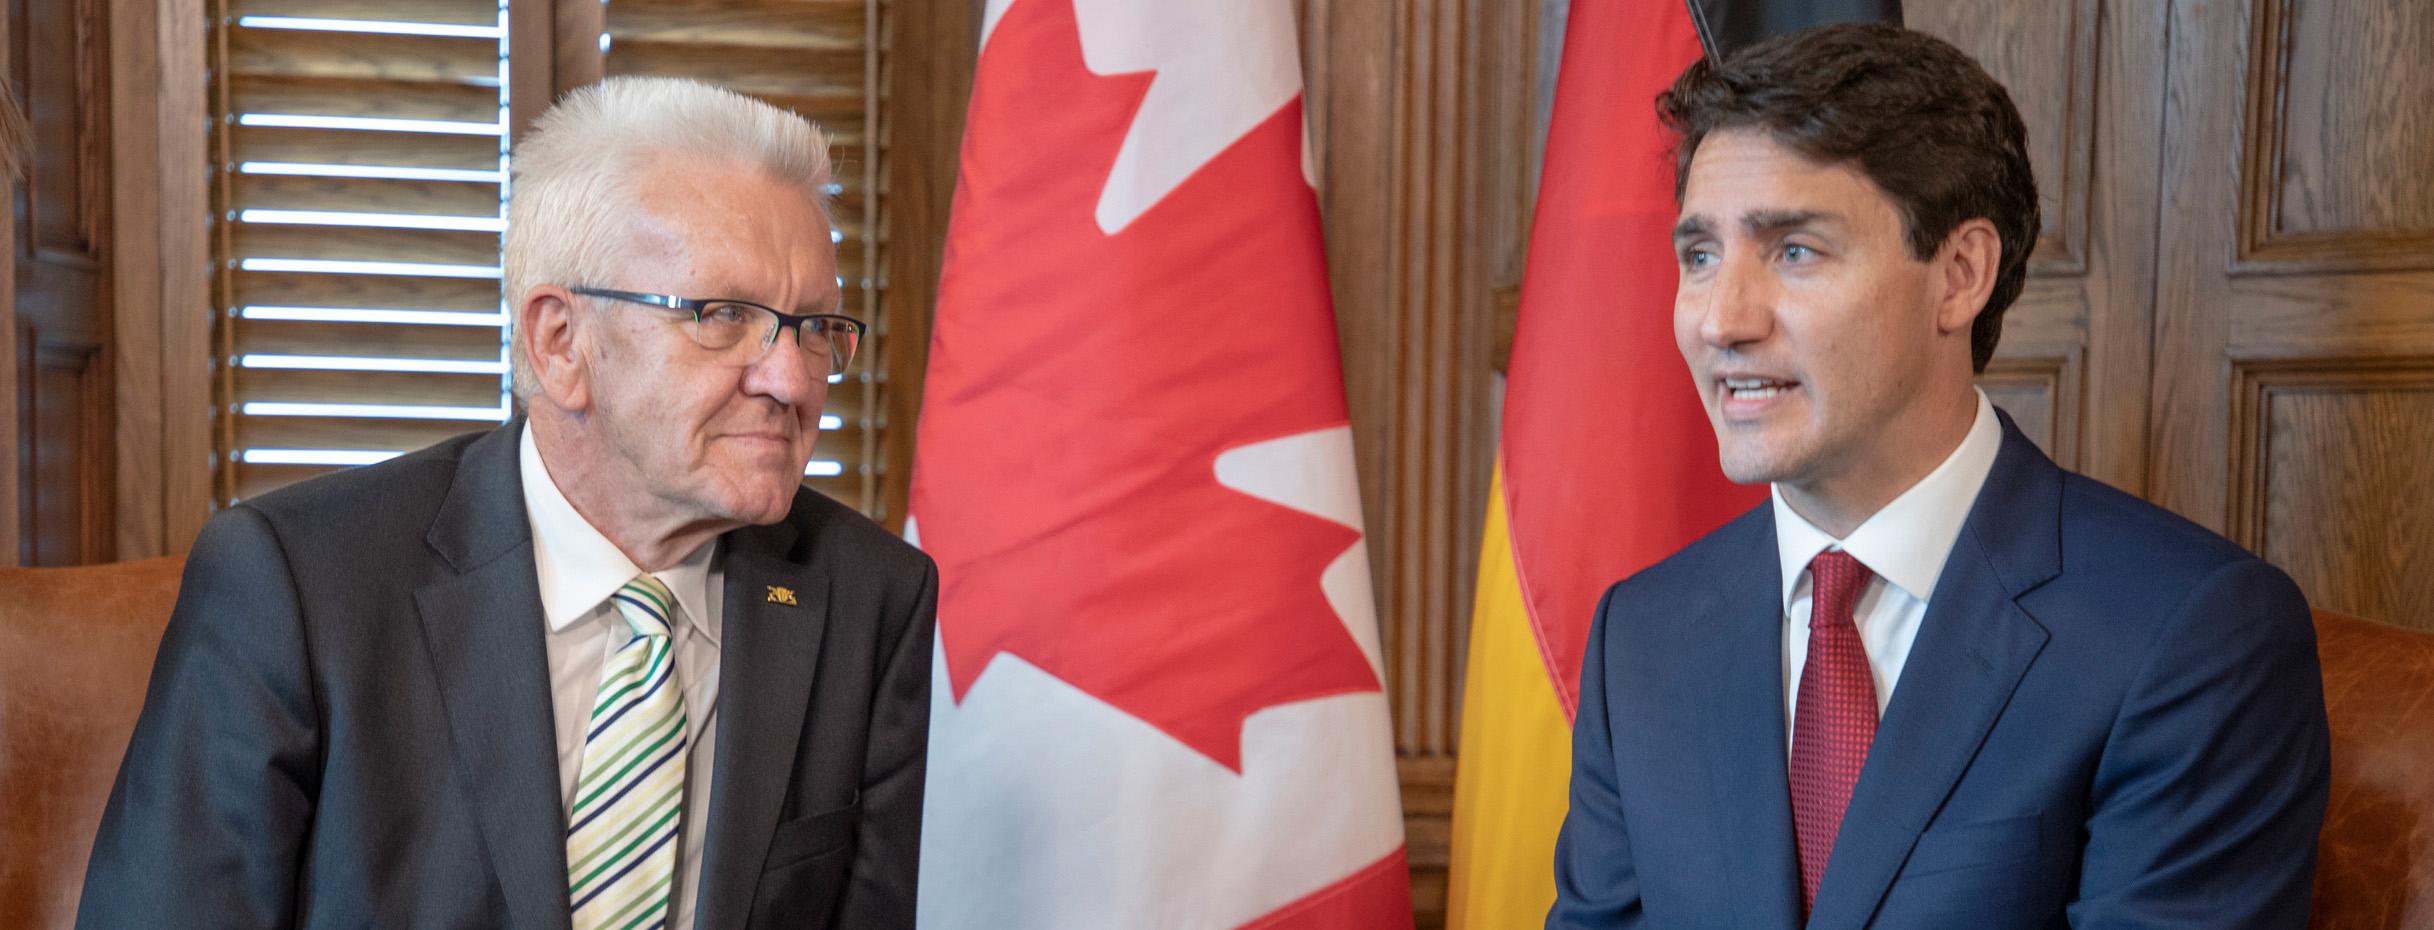 Ministerpräsident Winfried Kretschmann (l.) im Gespräch mit dem kanadischen Premierminister Justin Trudeau (r.) in Ottawa (Bild: Staatsministerium Baden-Württemberg)